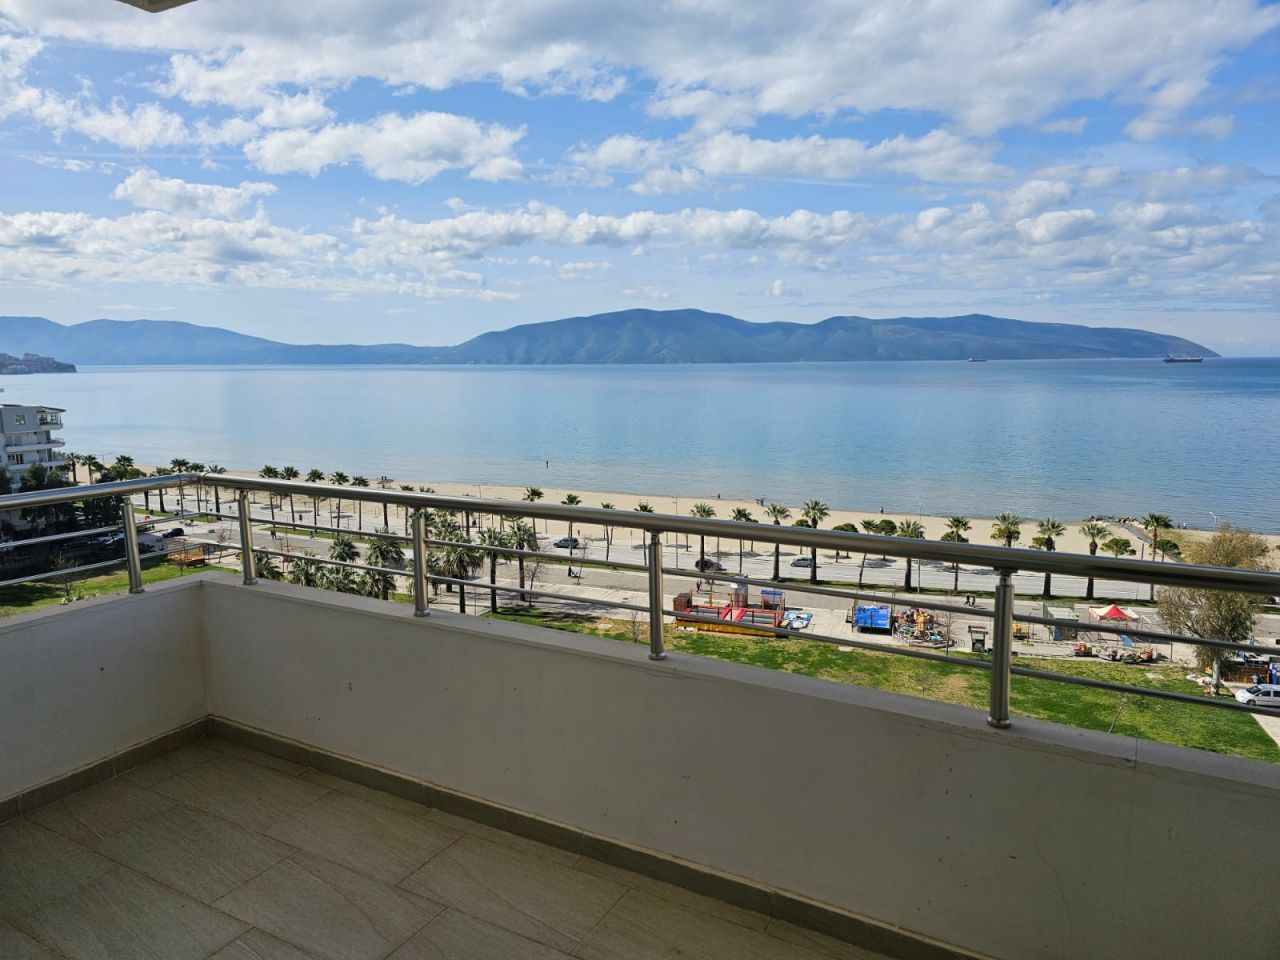 Mieszkanie Na Sprzedaż We Wlorze W Albanii, Położone W Dobrej Okolicy, Zaledwie Kilka Kroków Od Plaży